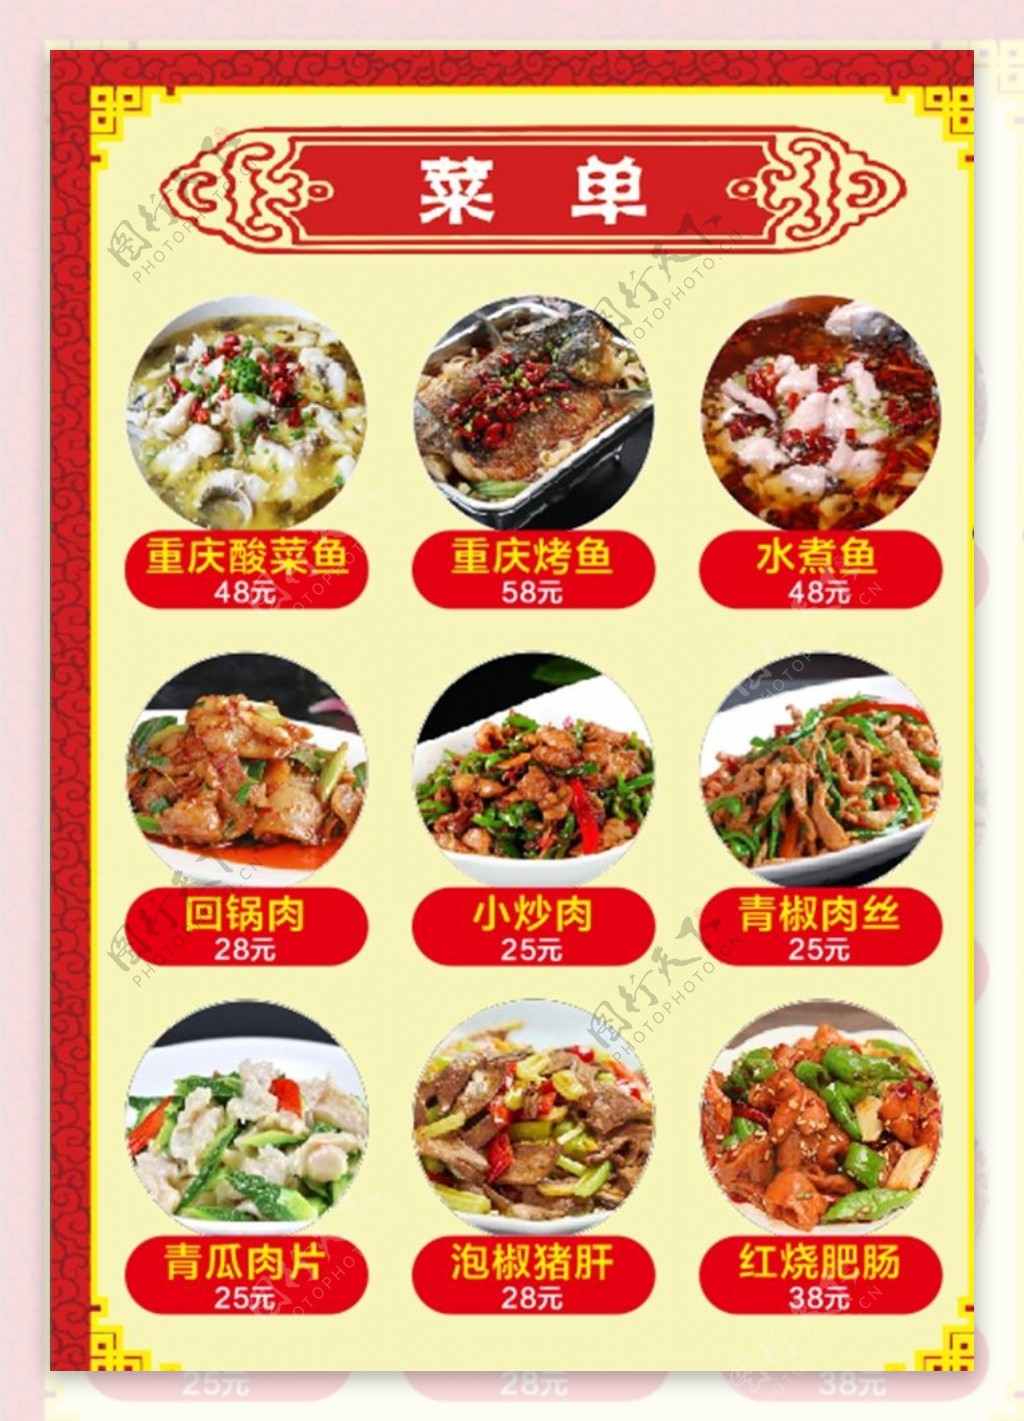 重庆饭店菜单